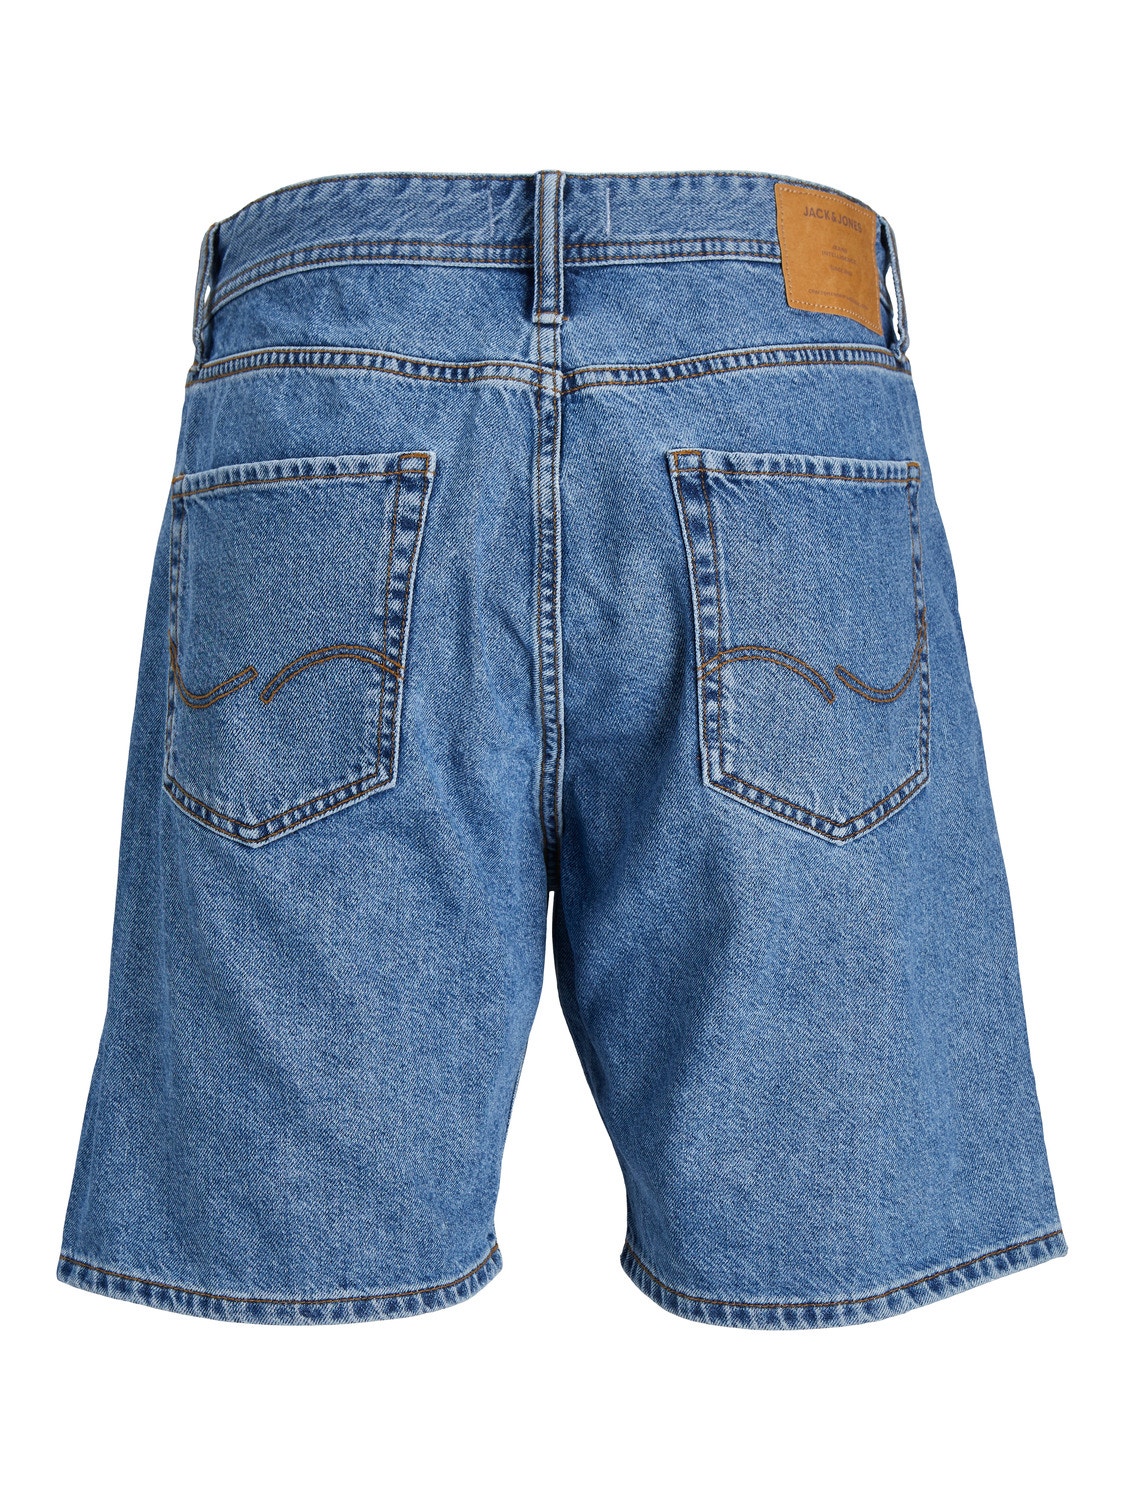 Jack & Jones Plus Size Loose Fit Casual shorts -Blue Denim - 12257457